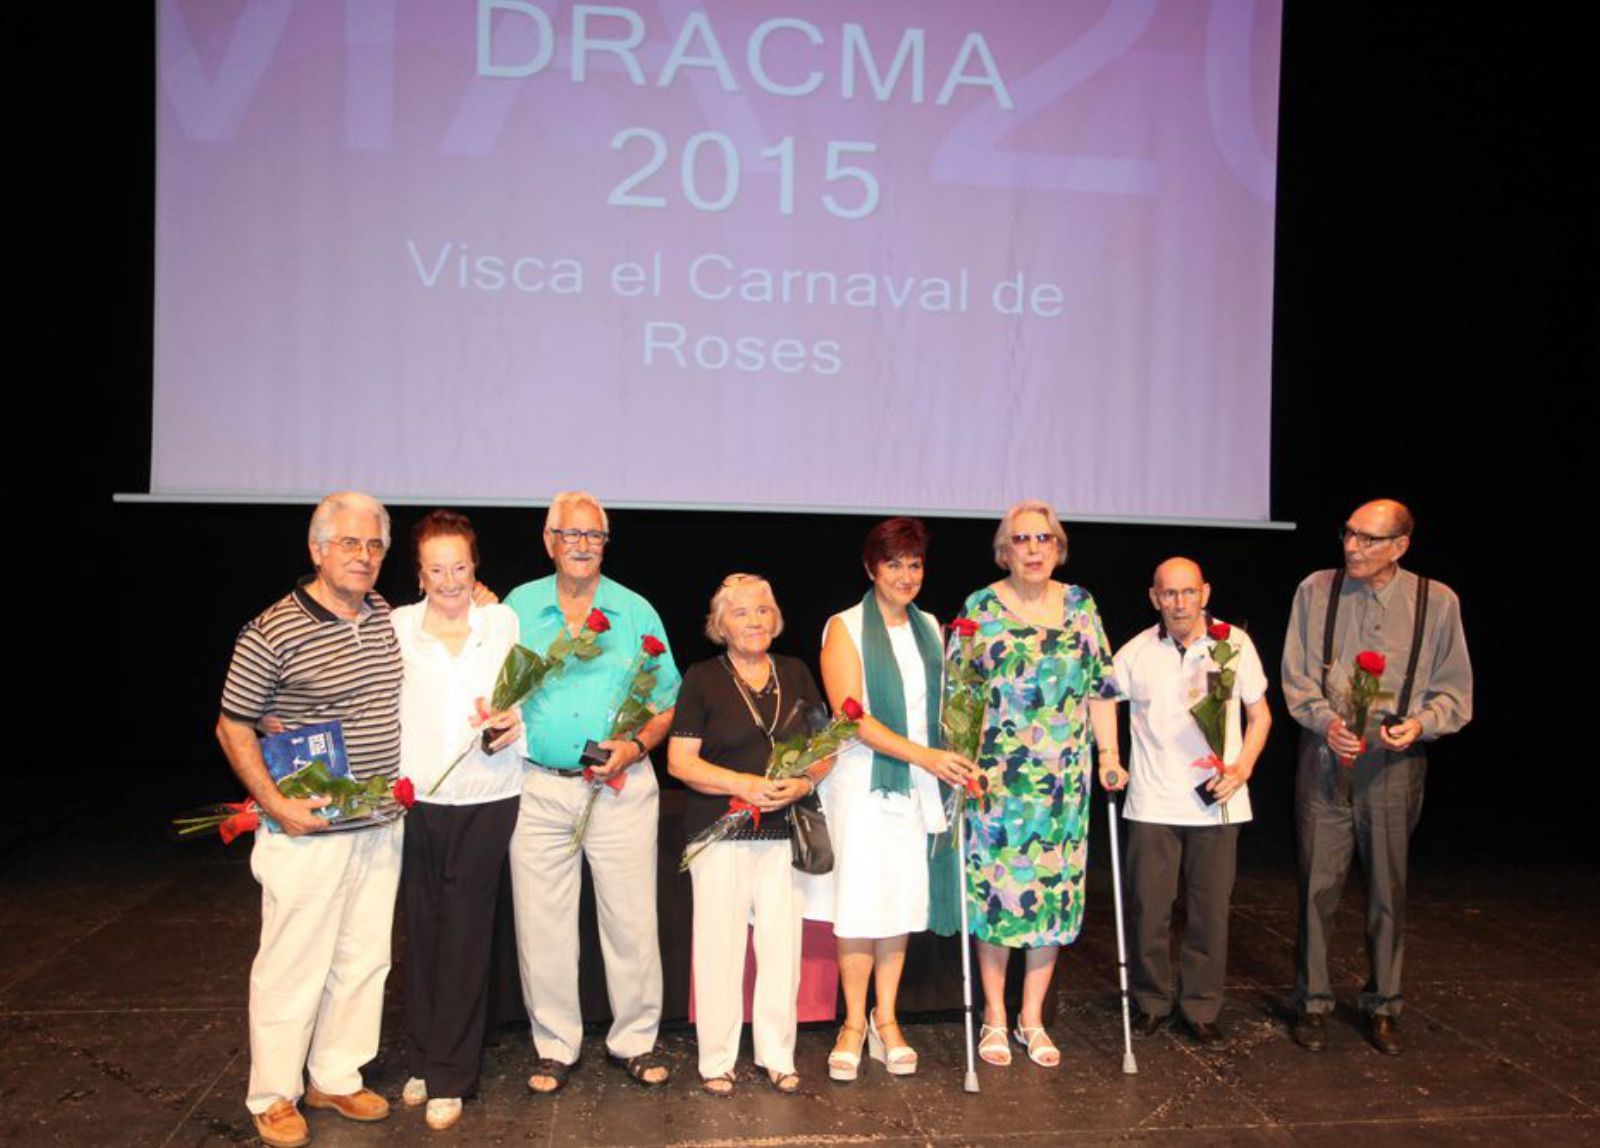 Josep Calvet –el de més a la dreta– va rebre el Dracma el 2015